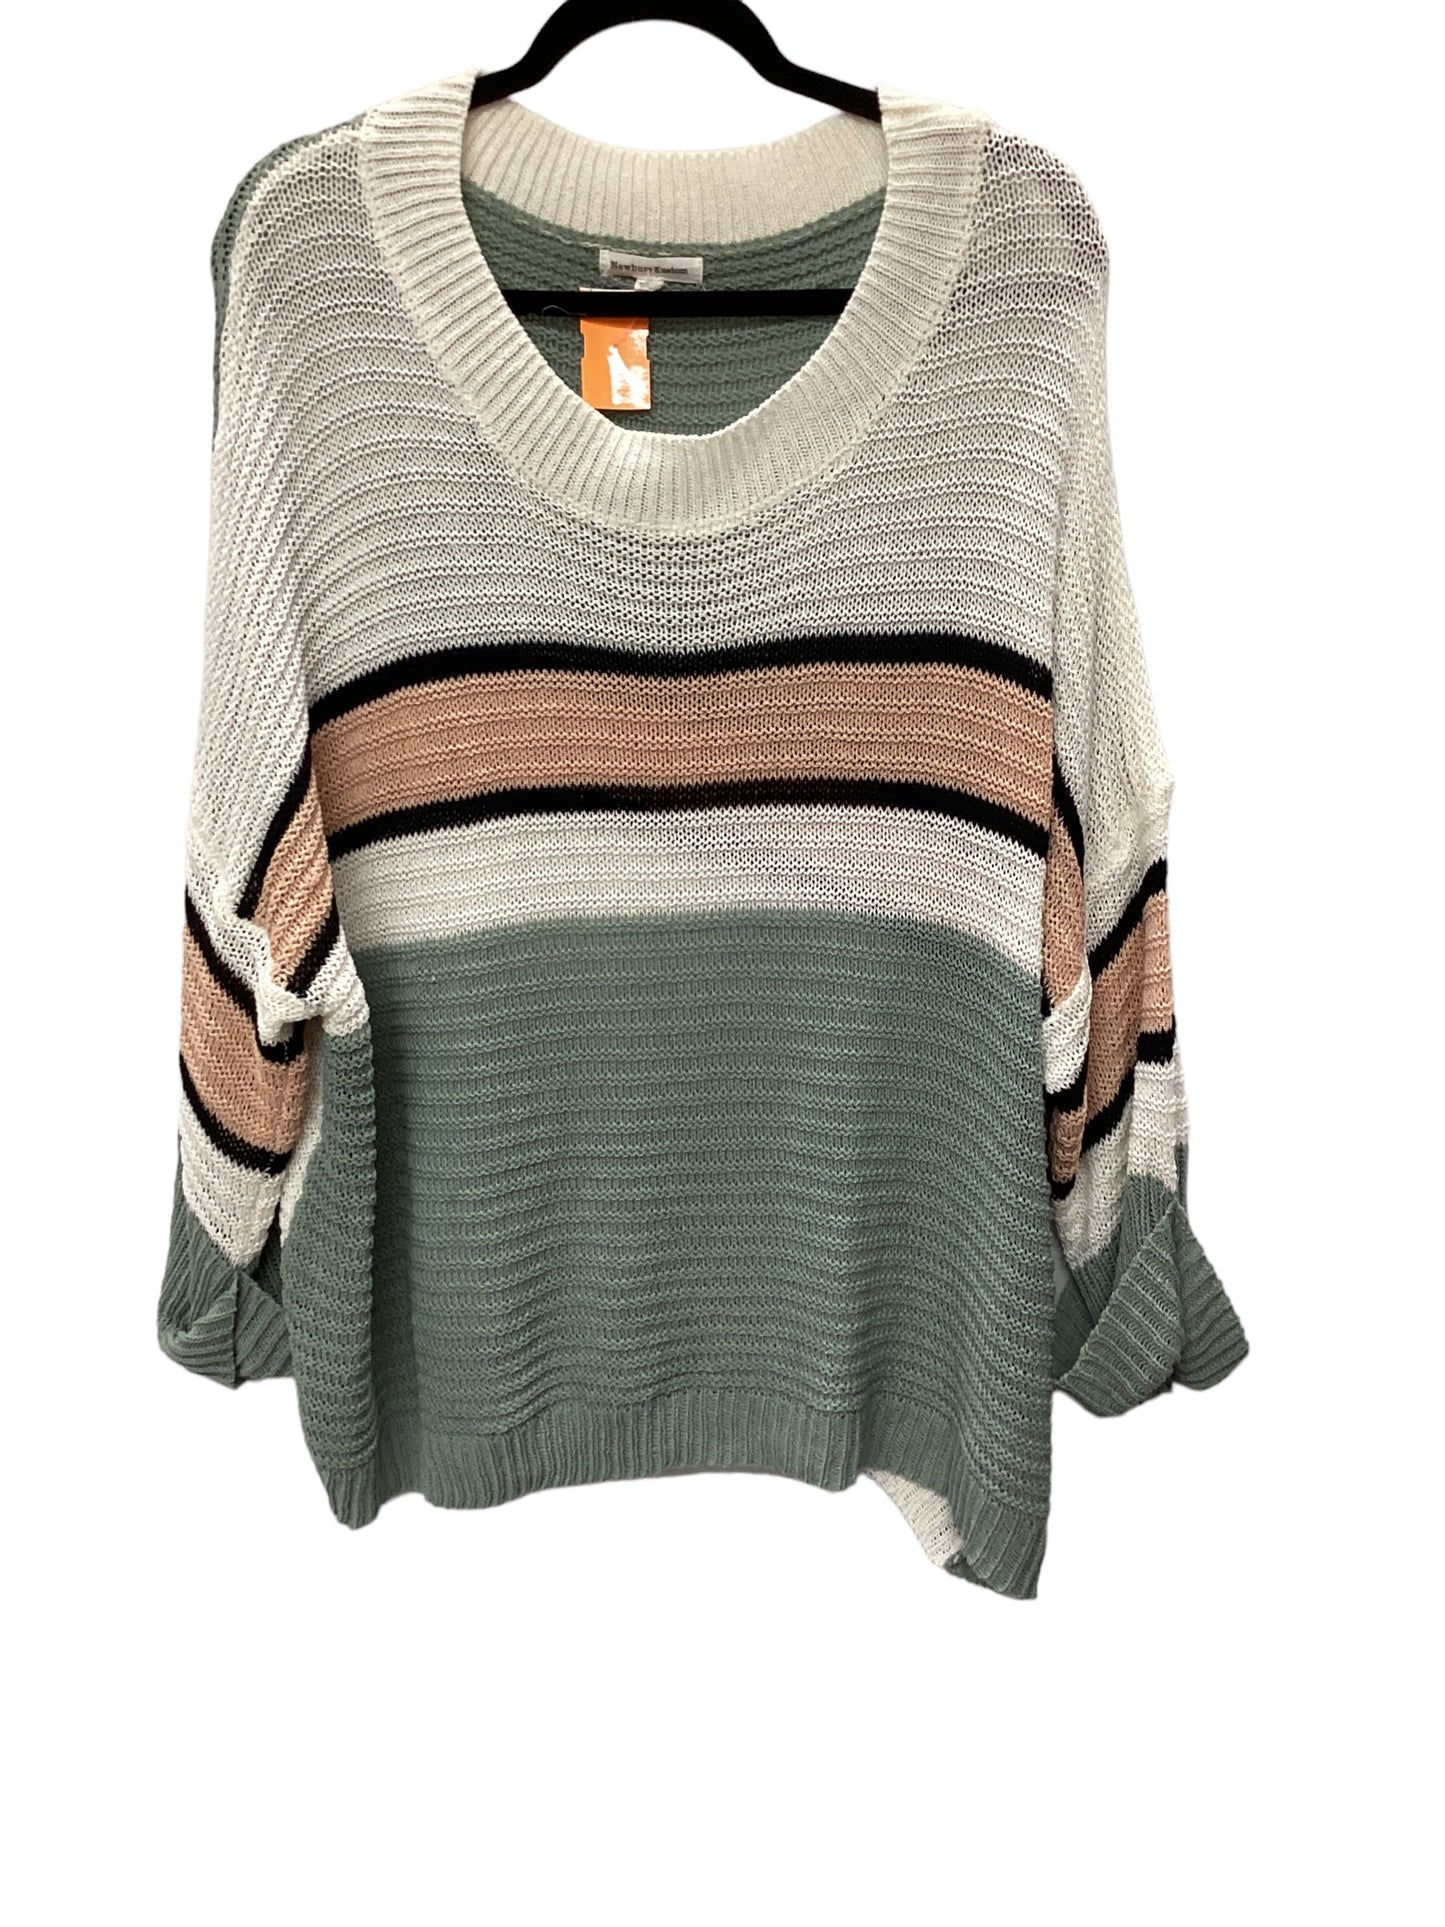 Sweater By Newbury Kustom  Size: S